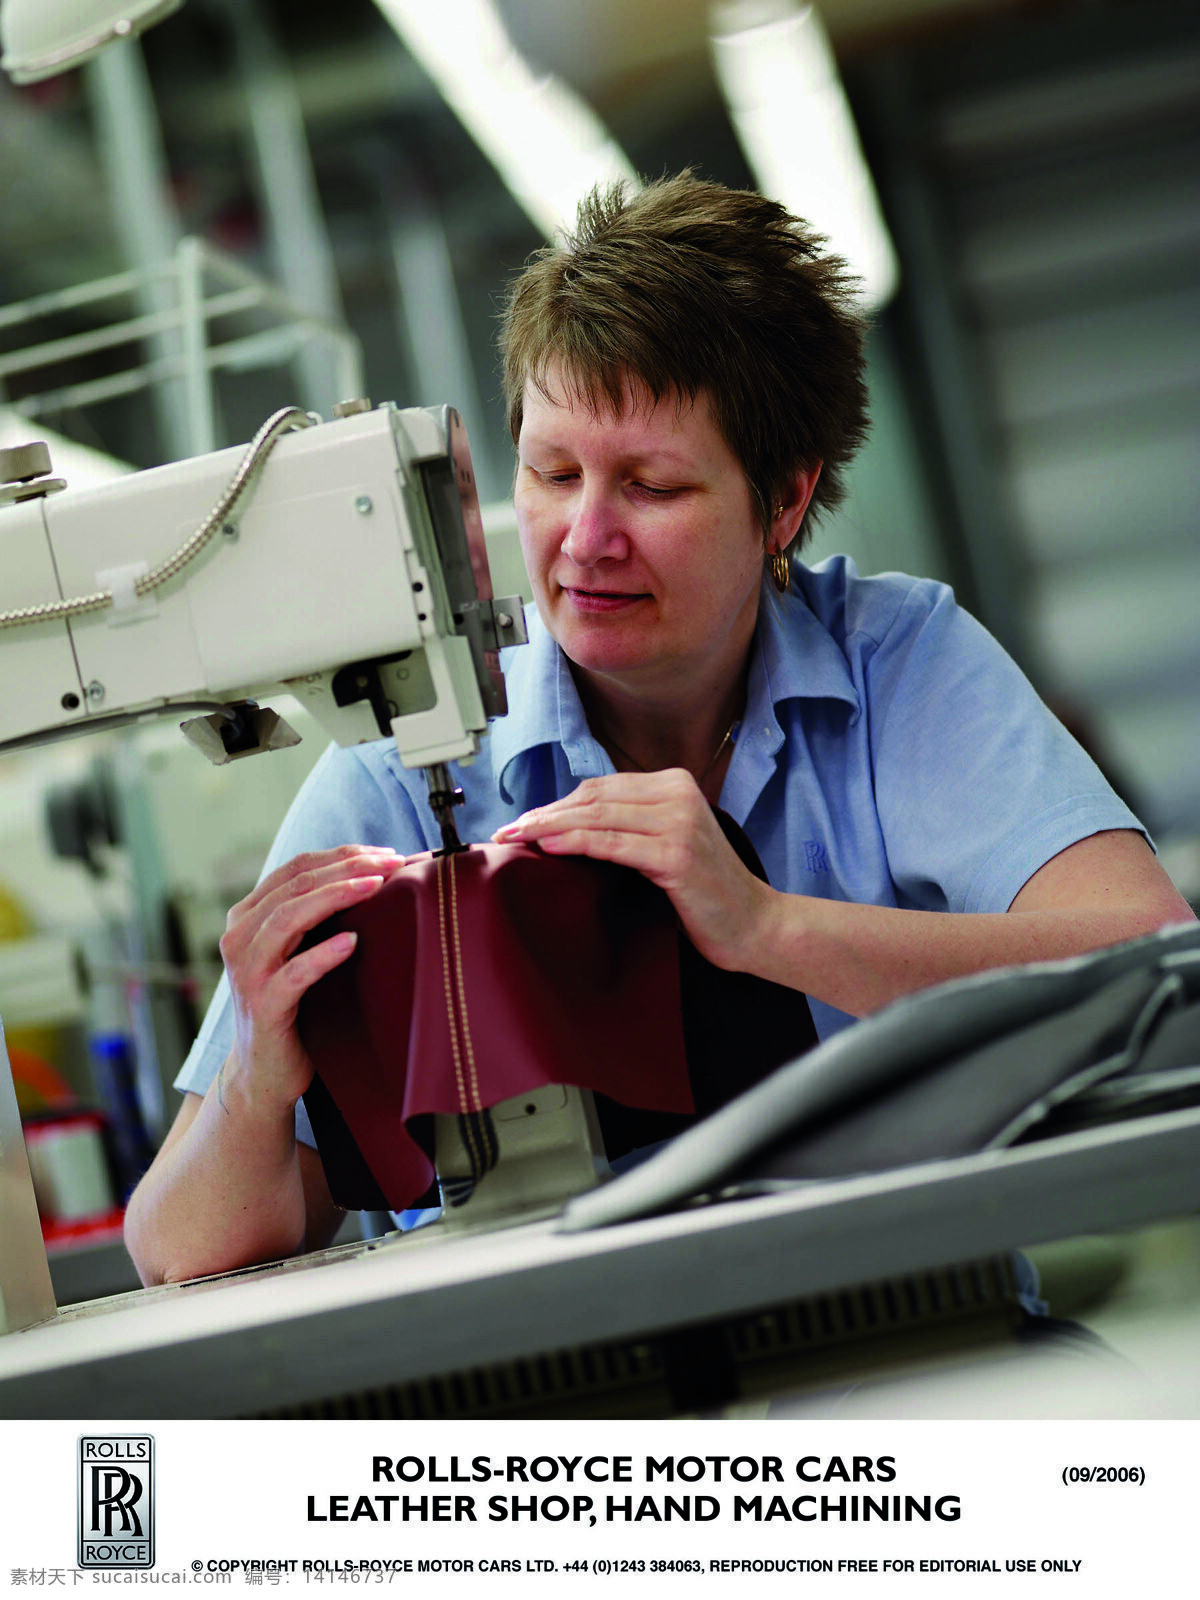 劳斯莱斯 生产线 rolls royce 宝马 公司 旗下 品牌 车间生产线 缝制真皮内饰 女工 工业生产 现代科技